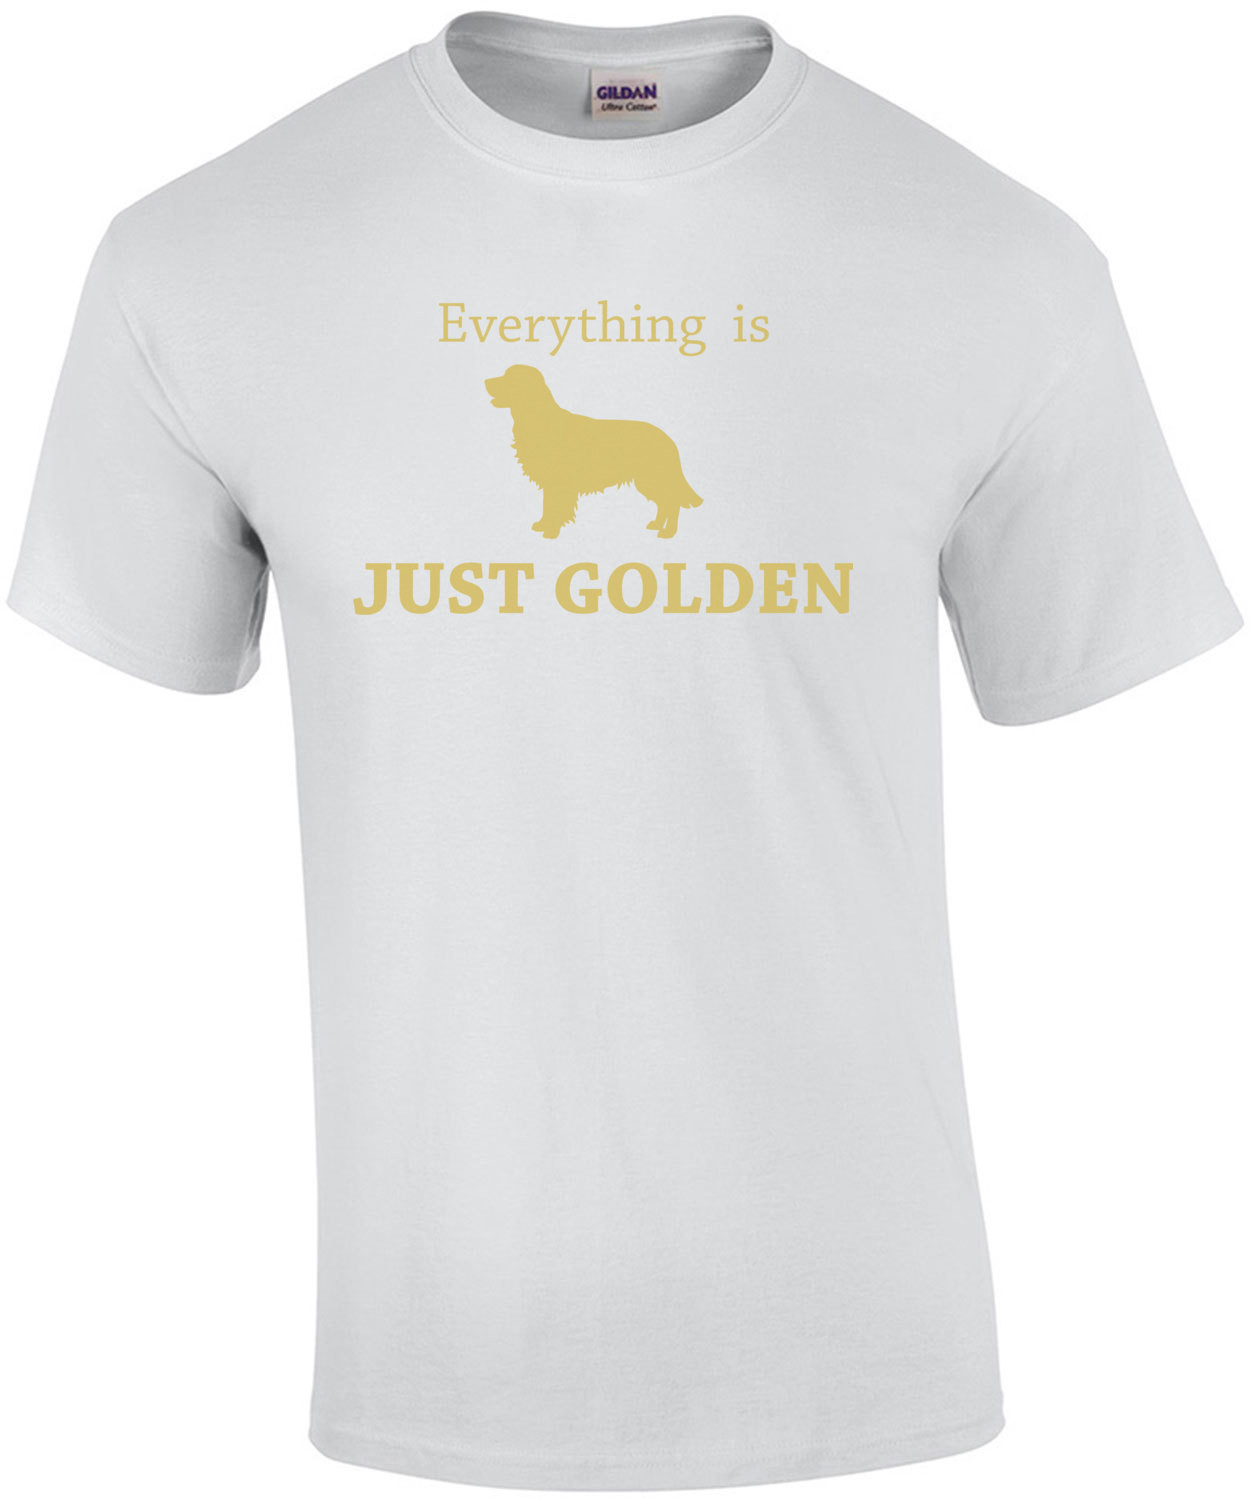 Everything is just golden - Golden Retriever T-Shirt